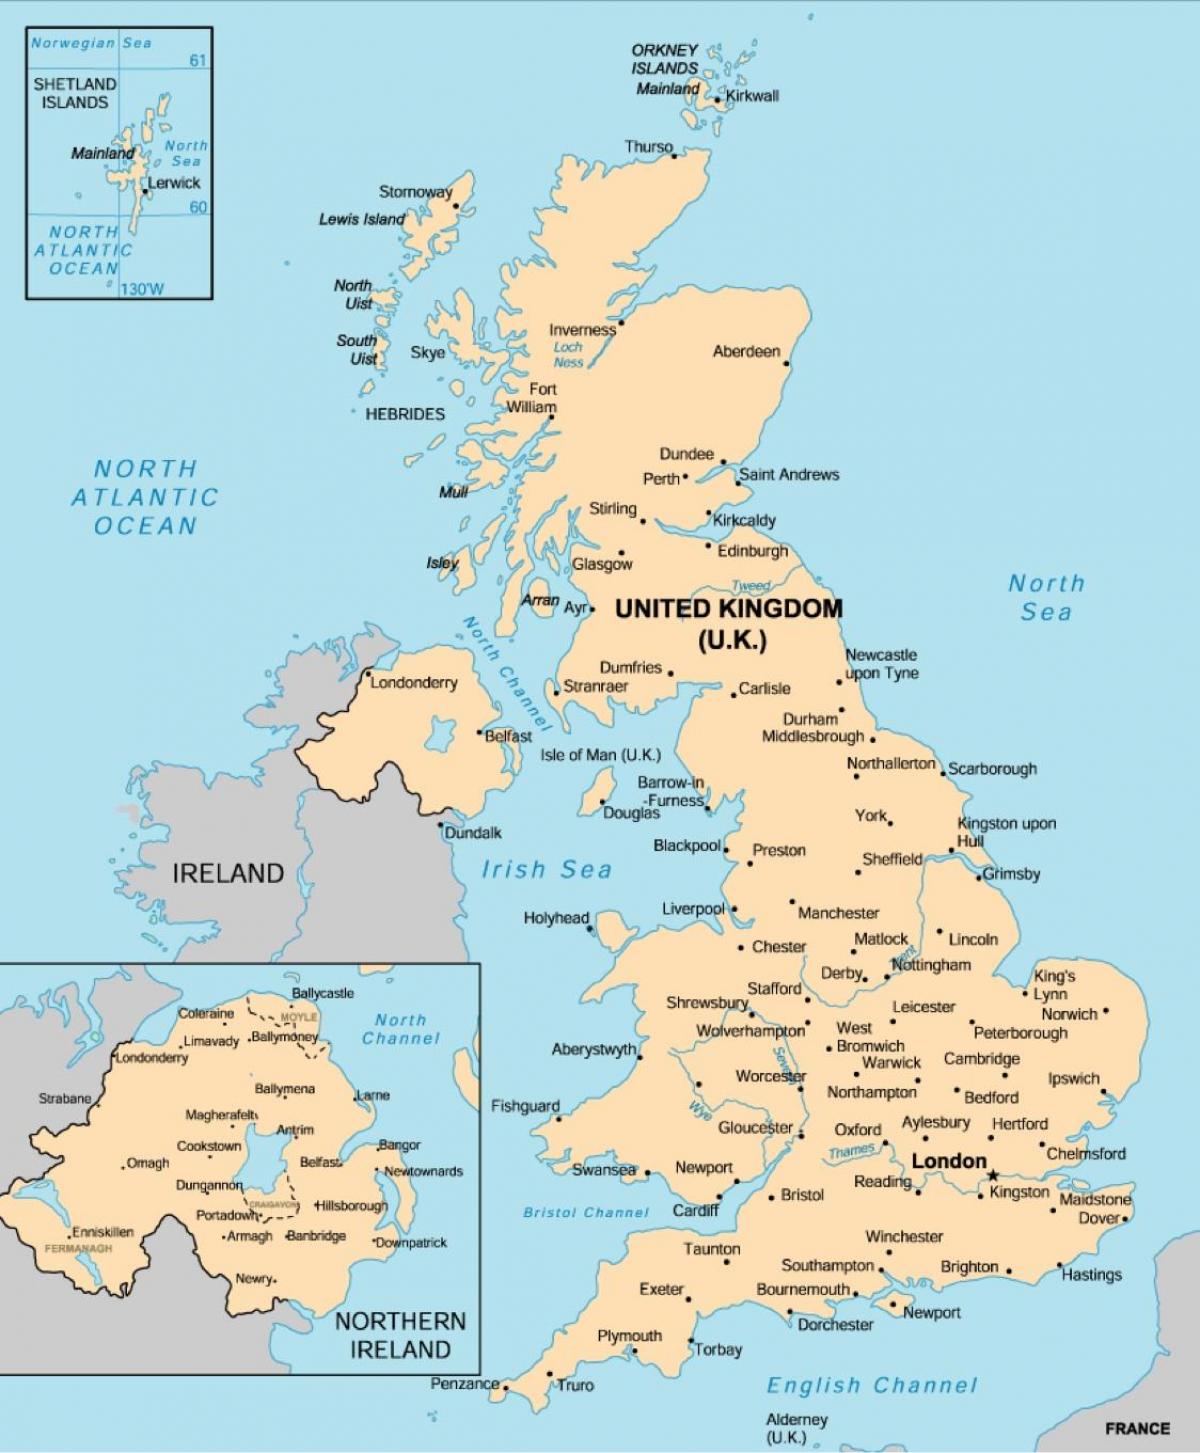 Mapa del Reino Unido (UK) con las principales ciudades